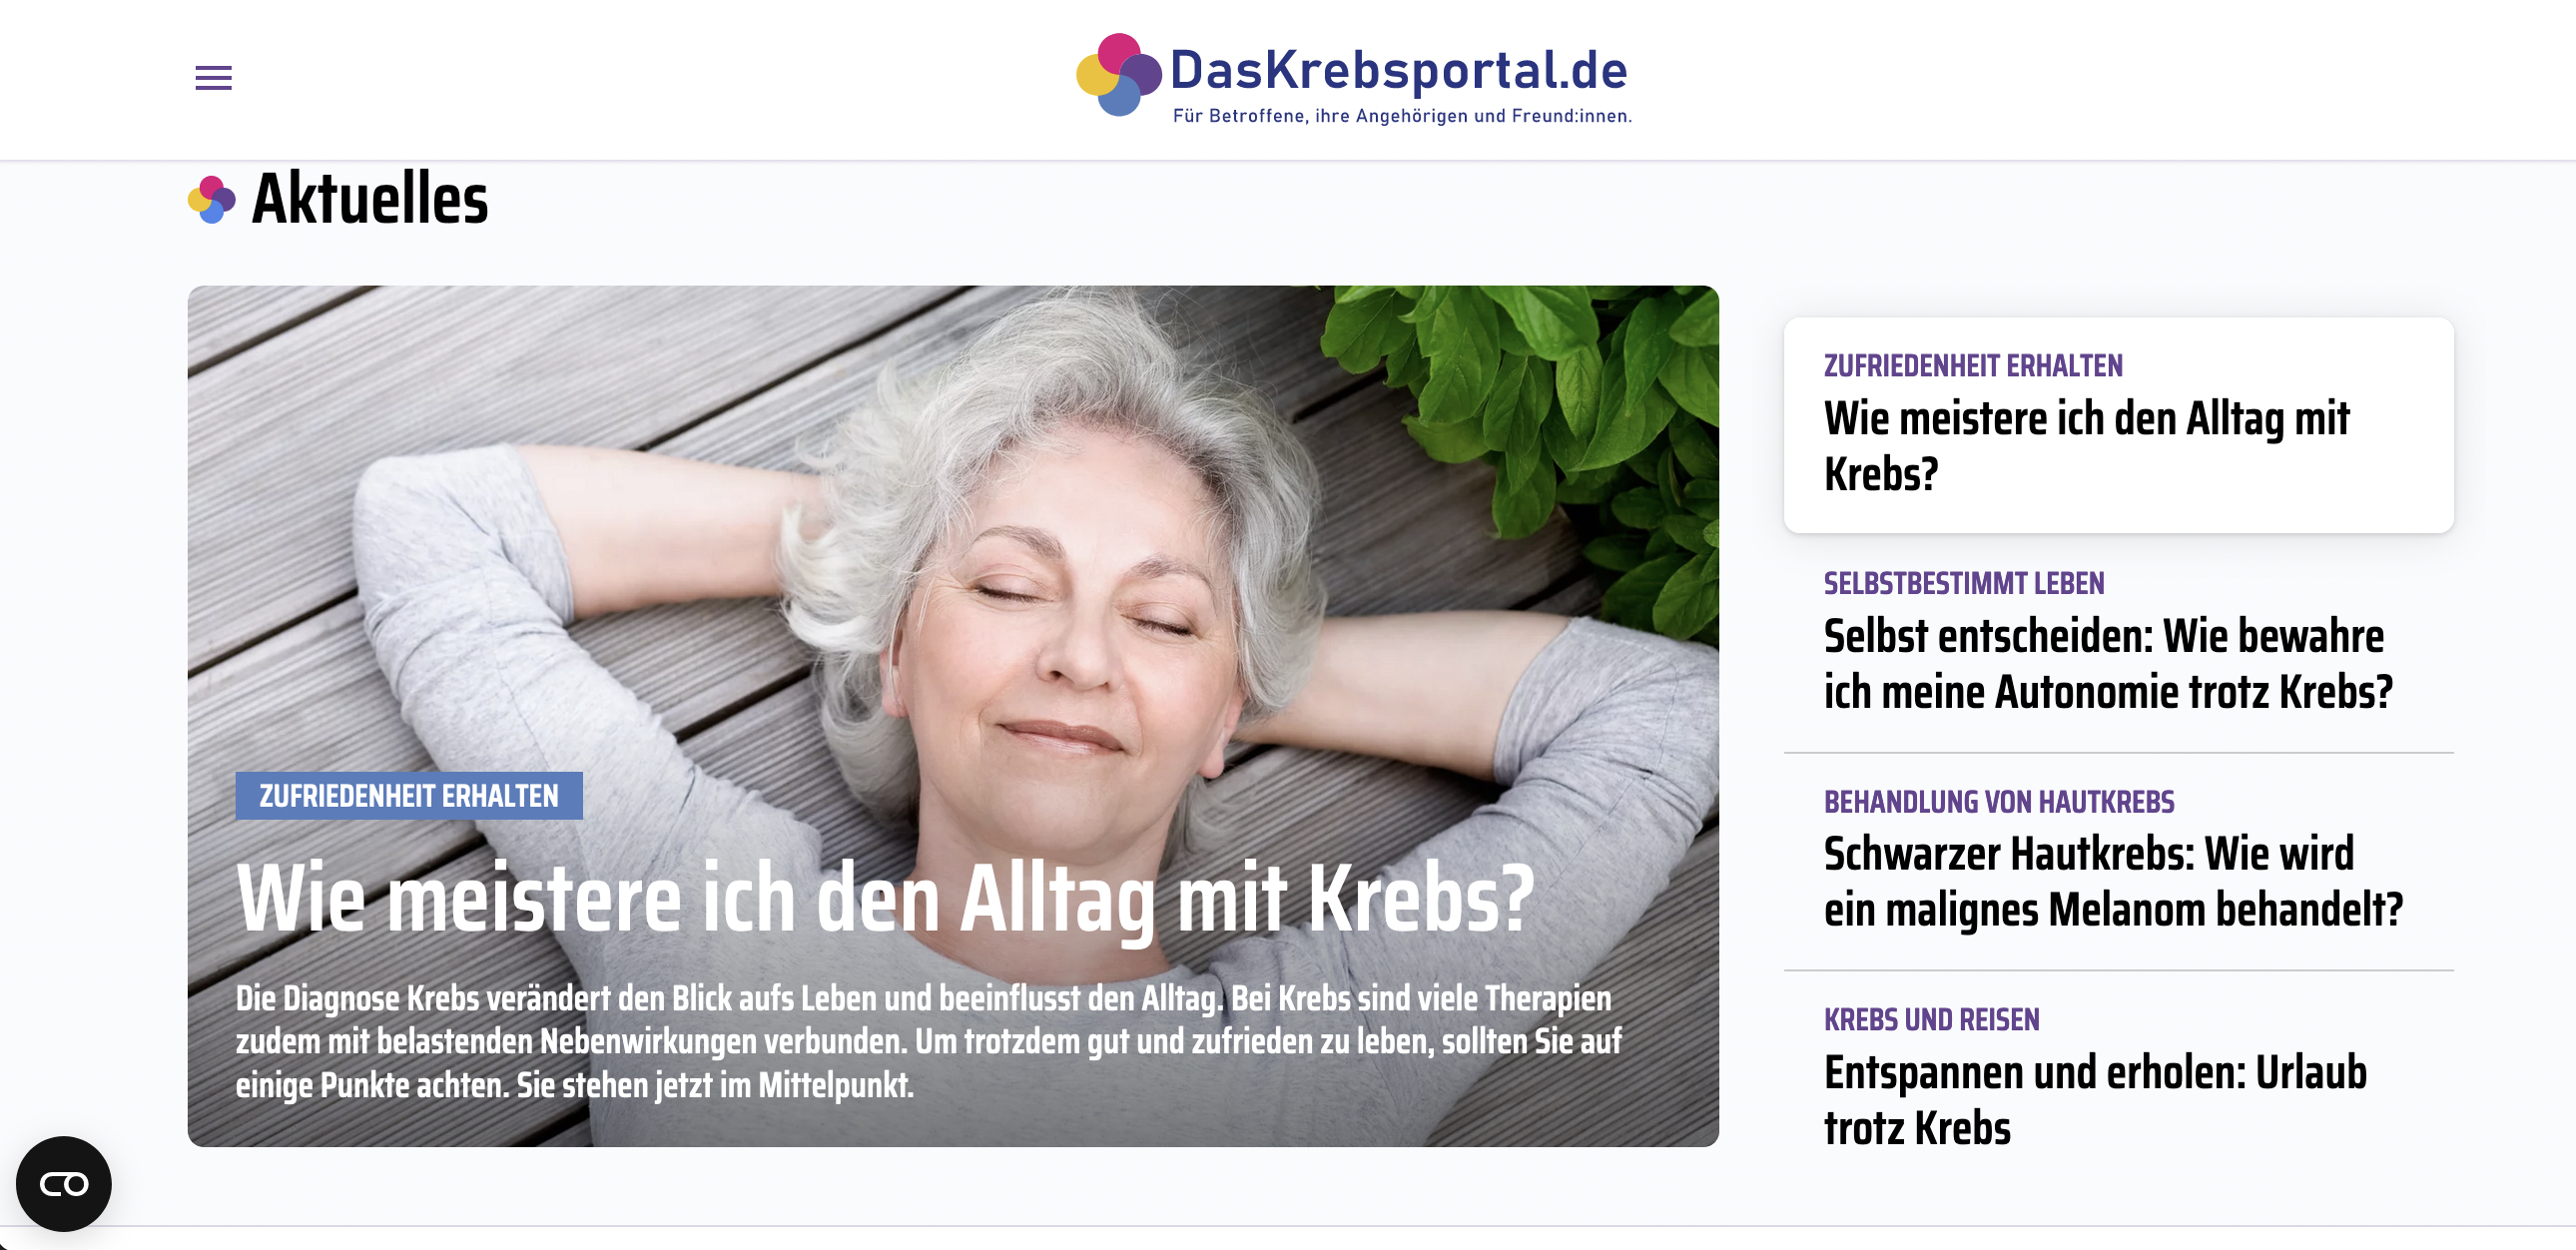 DasKrebsportal.de: Anlaufstelle bei Fragen